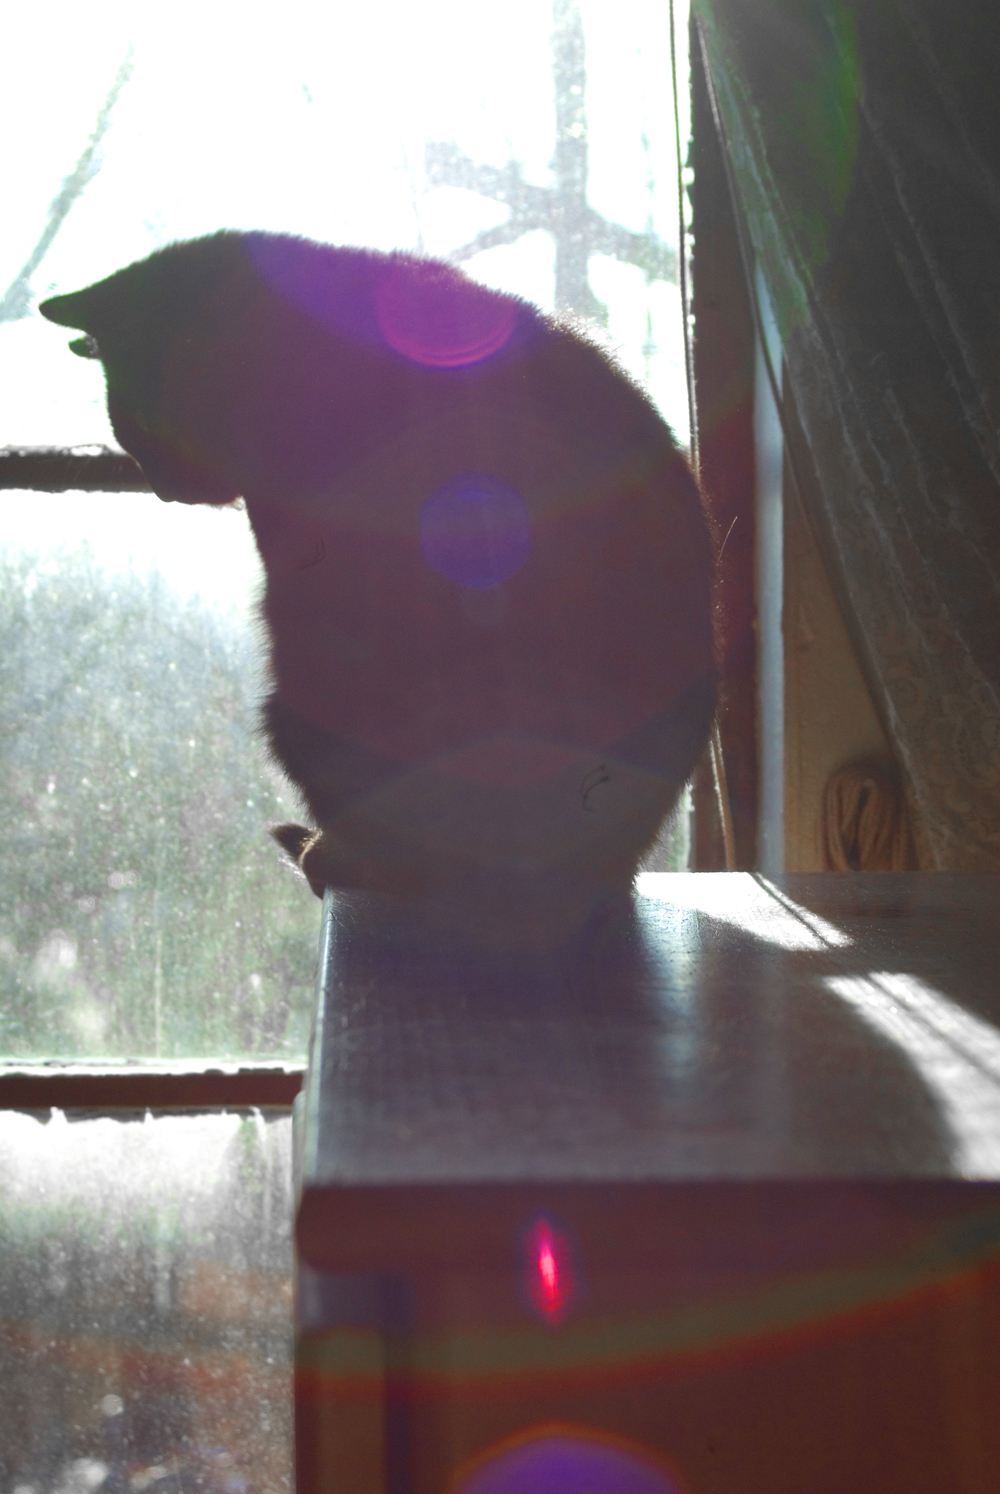 black cat by window